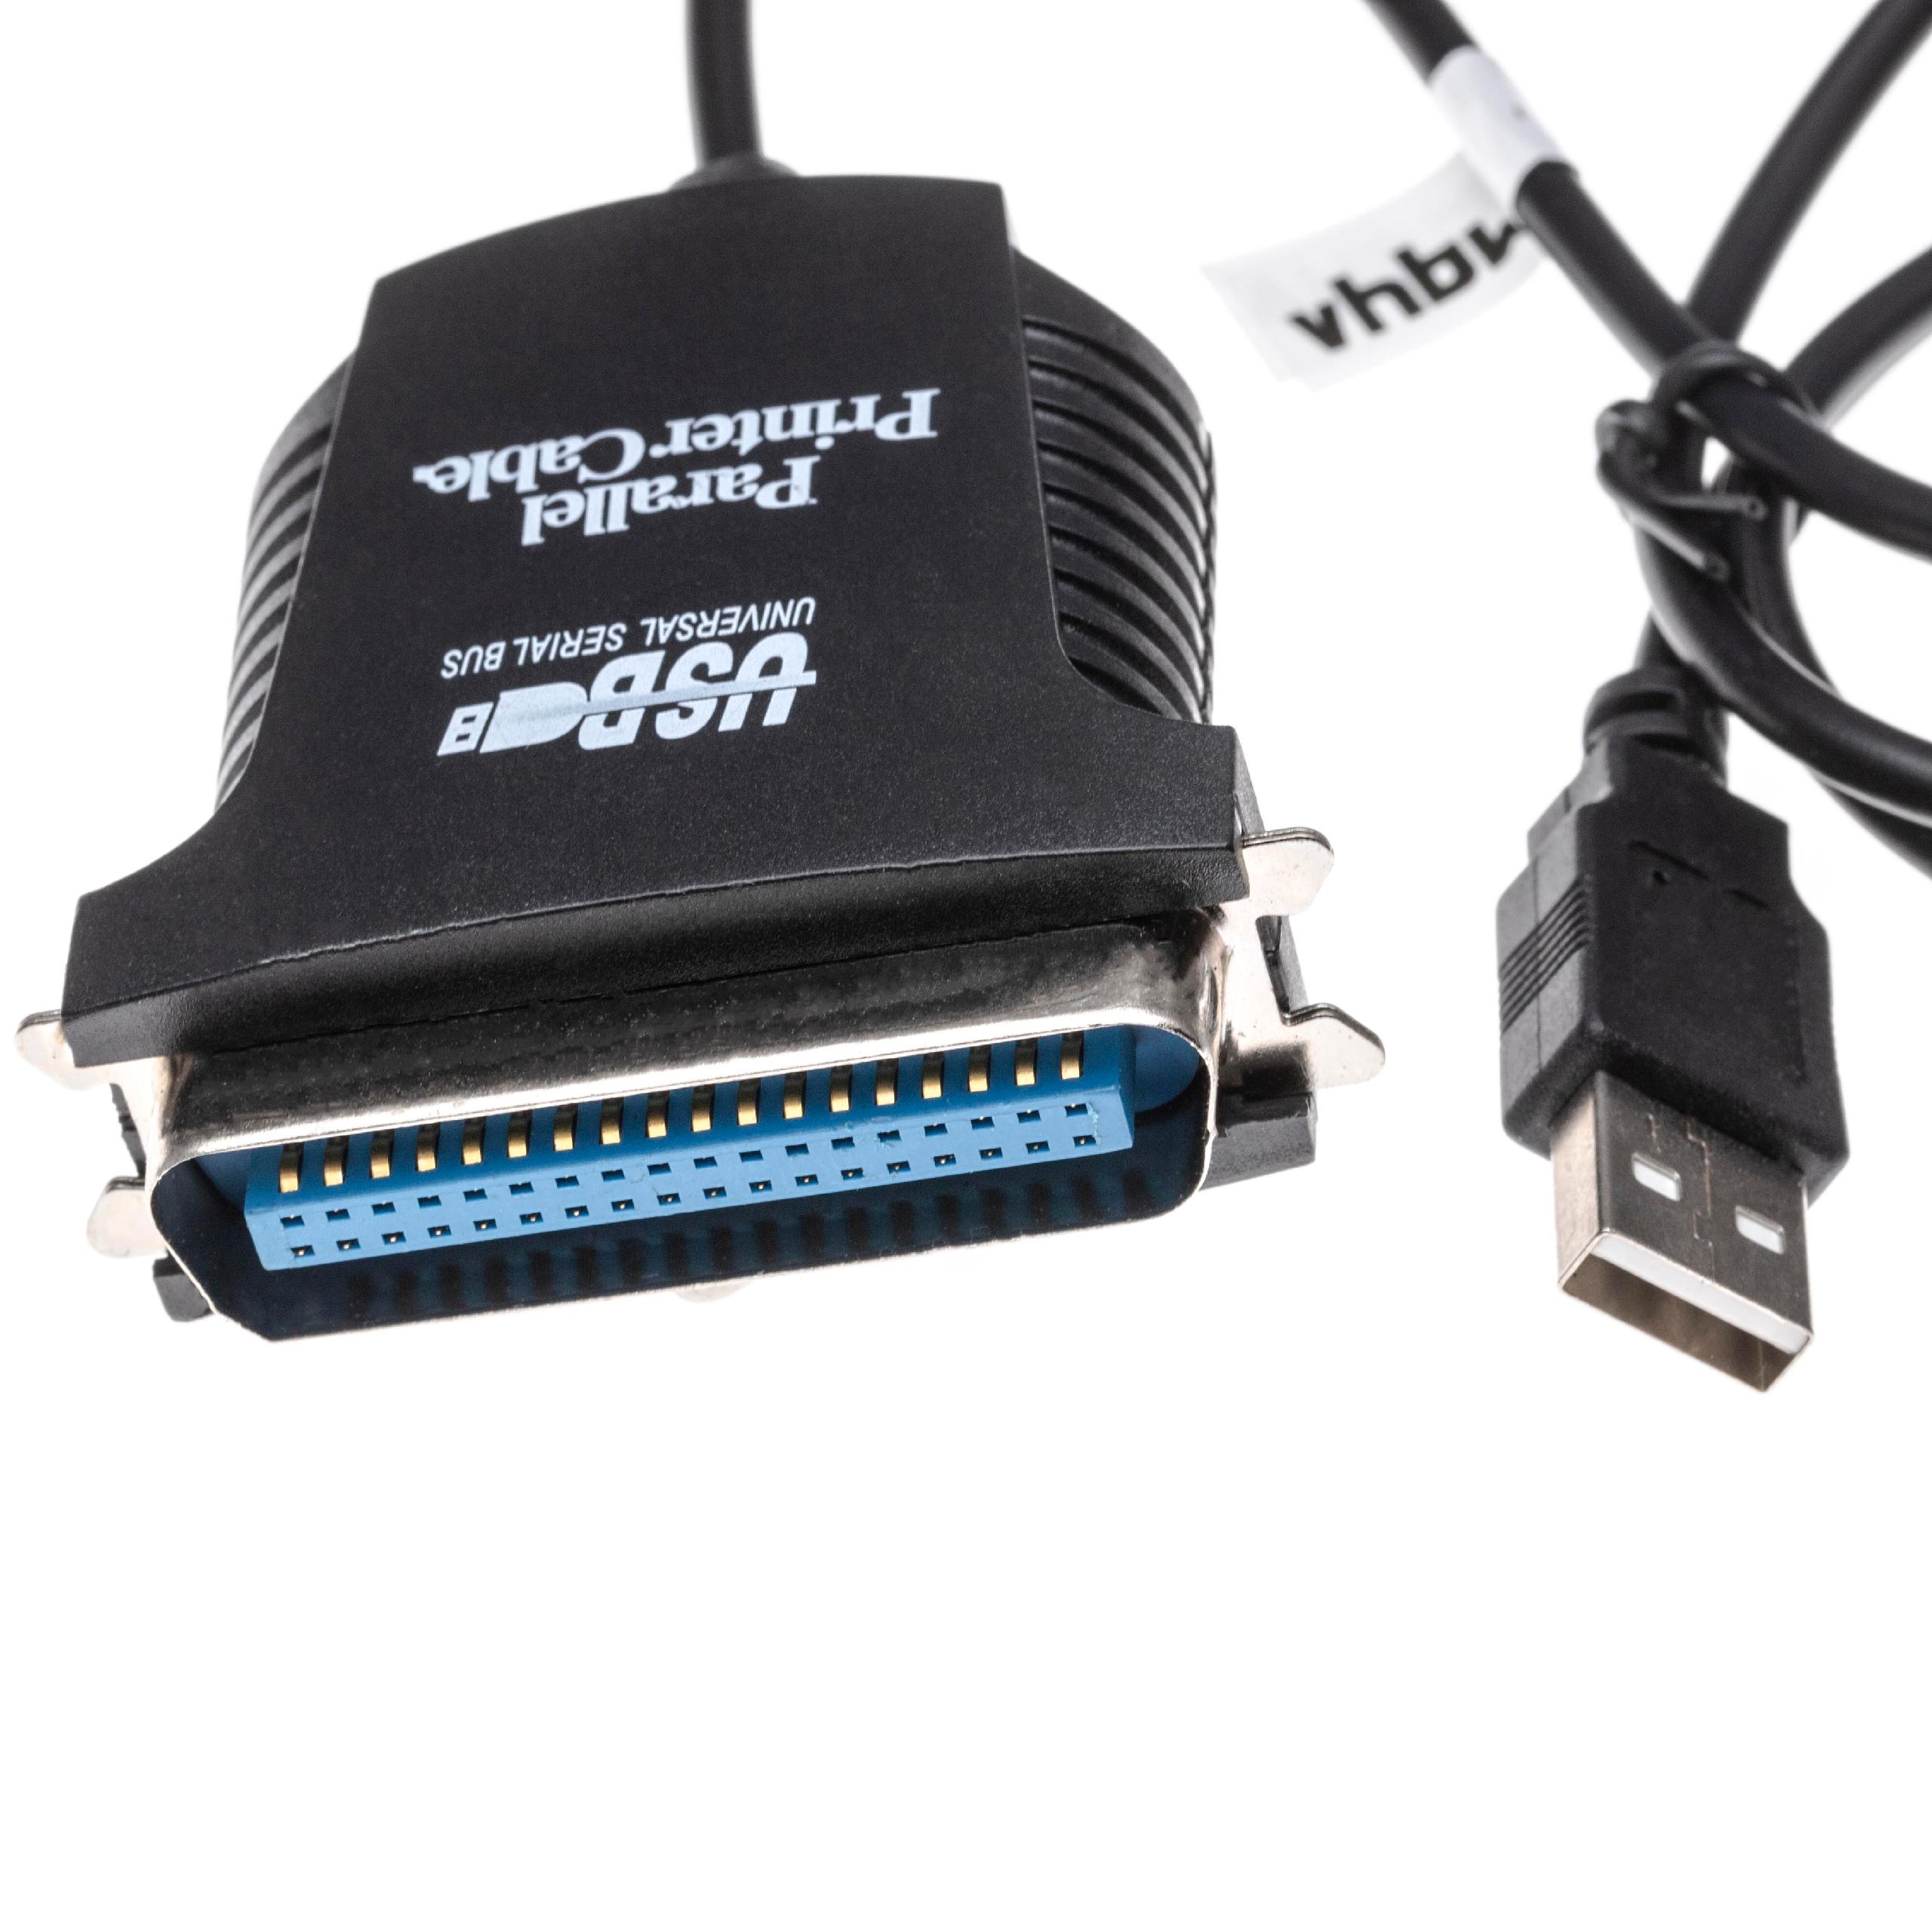 Vhbw cavo della stampante cavo per scanner cavo adattatore da USB A a USB B  - 3 m, nero